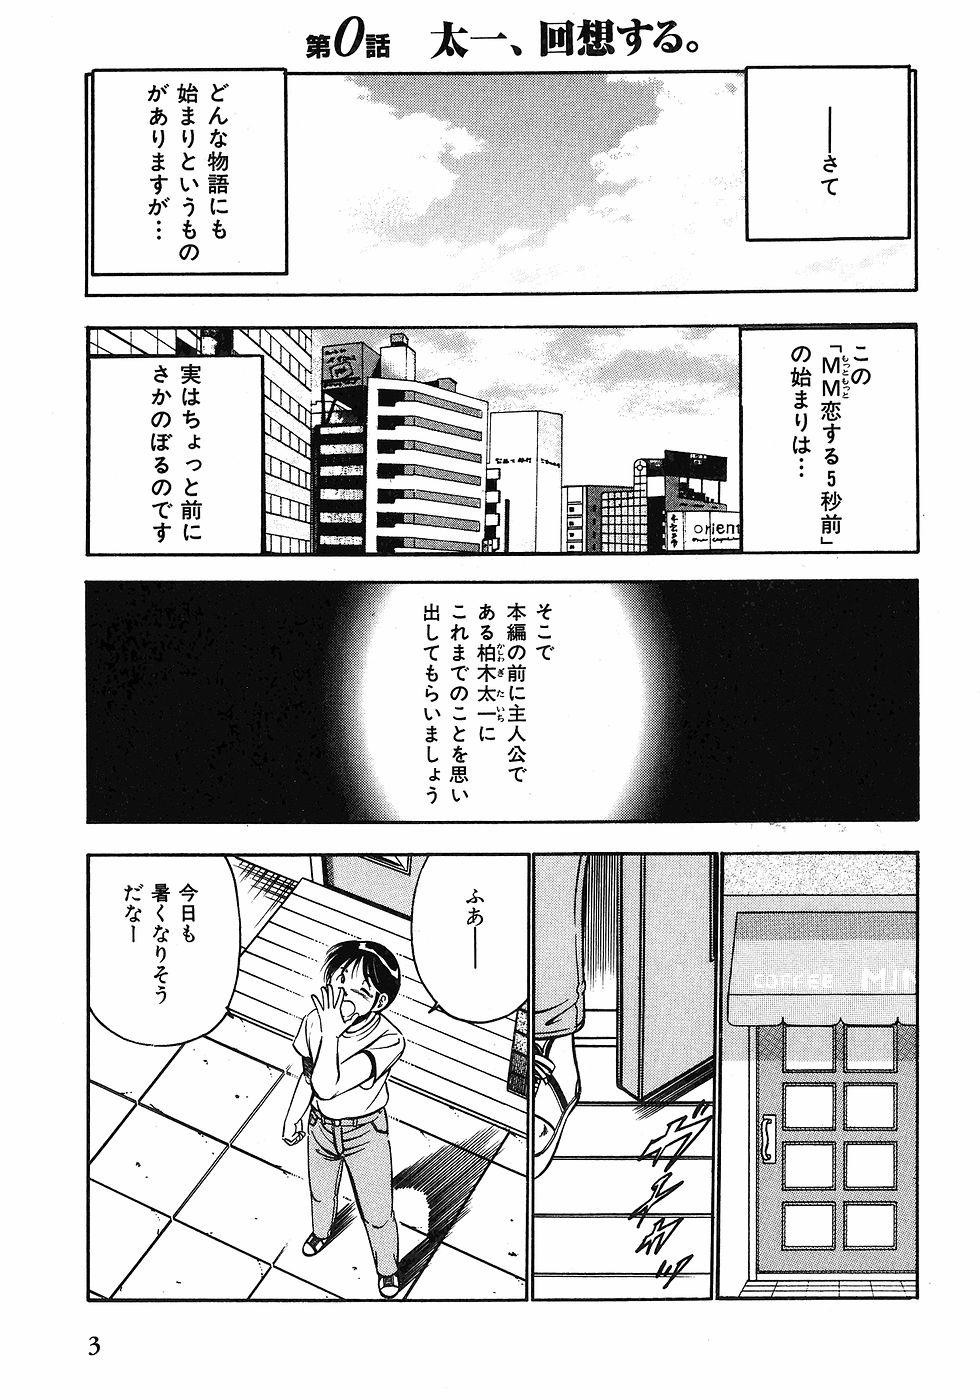 Tribute Motto Motto Koisuru 5 Byousen 1 Girl - Page 7